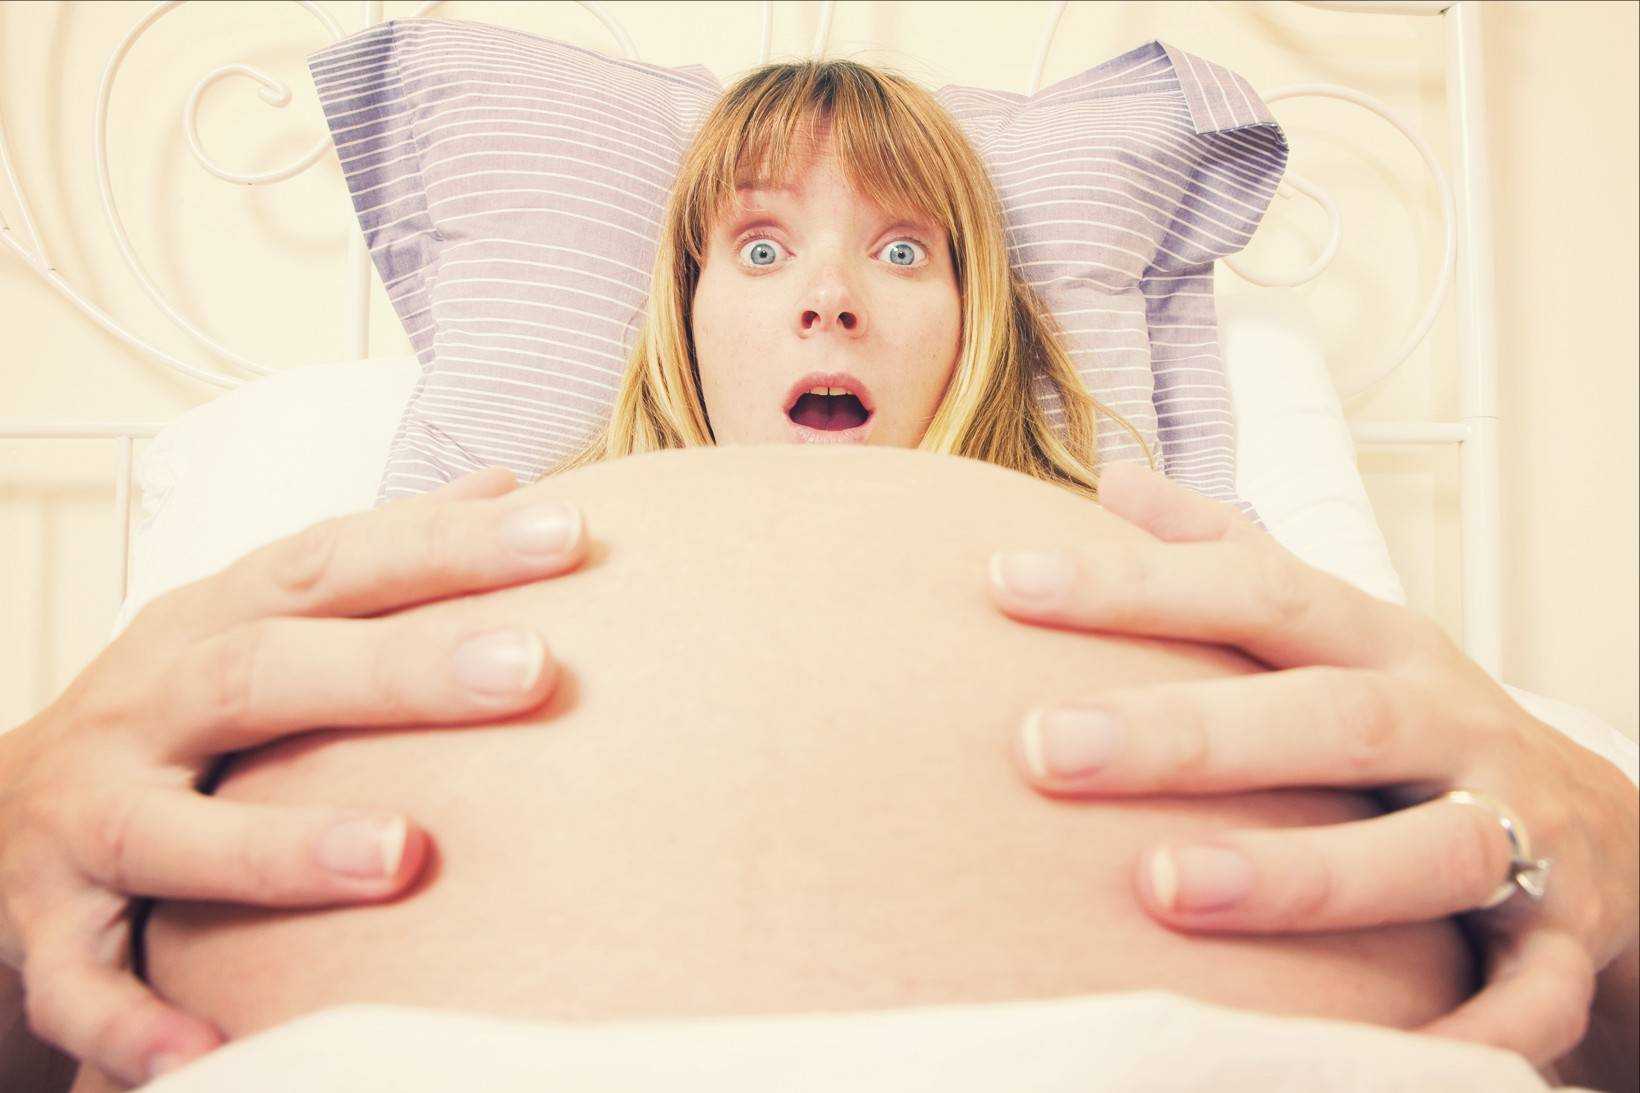 Не надо бояться: 6 страхов беременных и как с ними бороться